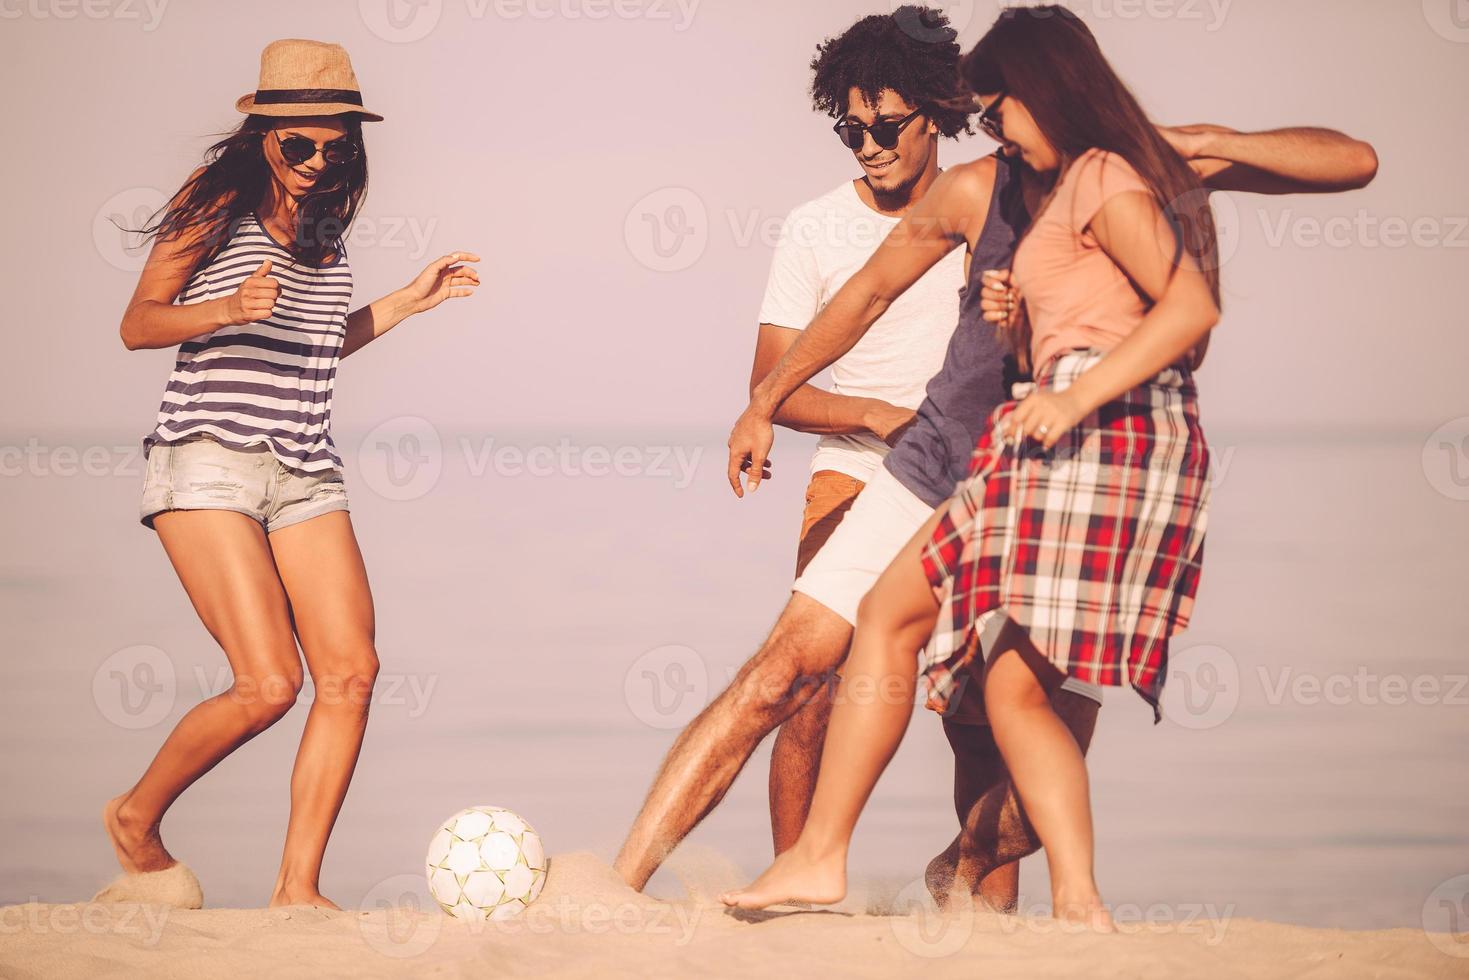 pasar un buen rato en la playa. grupo de jóvenes alegres jugando con una pelota de fútbol en la playa con el mar de fondo foto